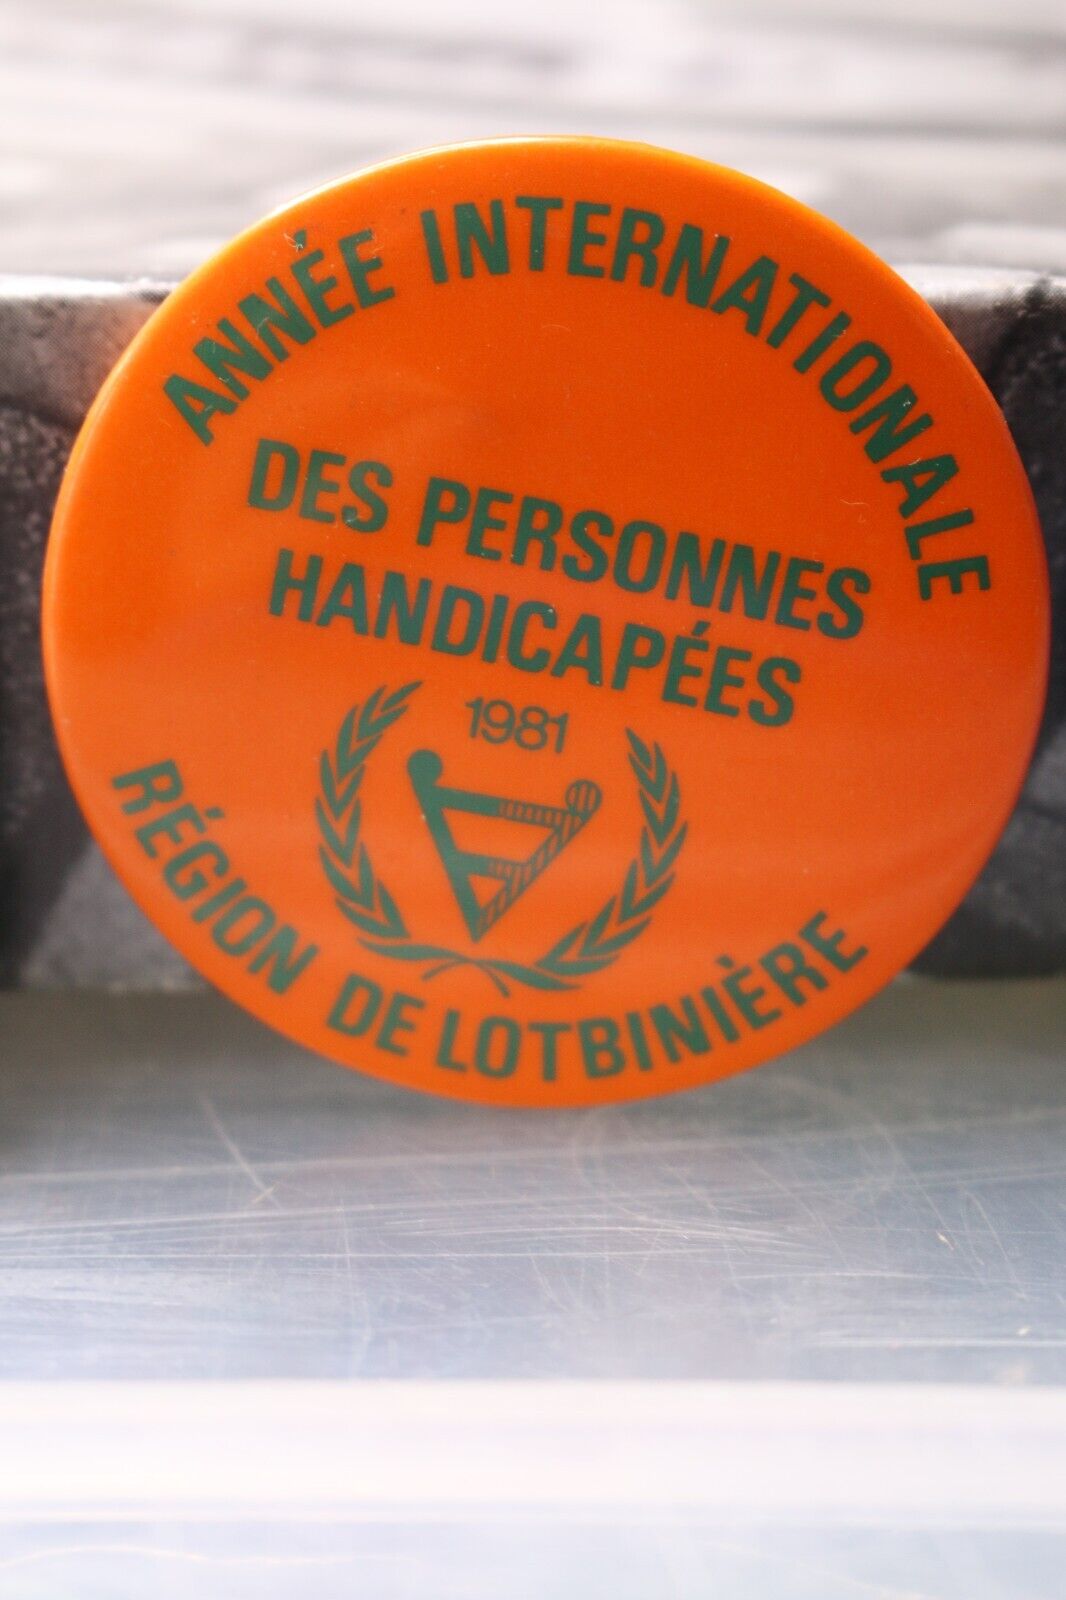 Vintage Macaron Pinback Québec Année International Personnes Handicapés 1981